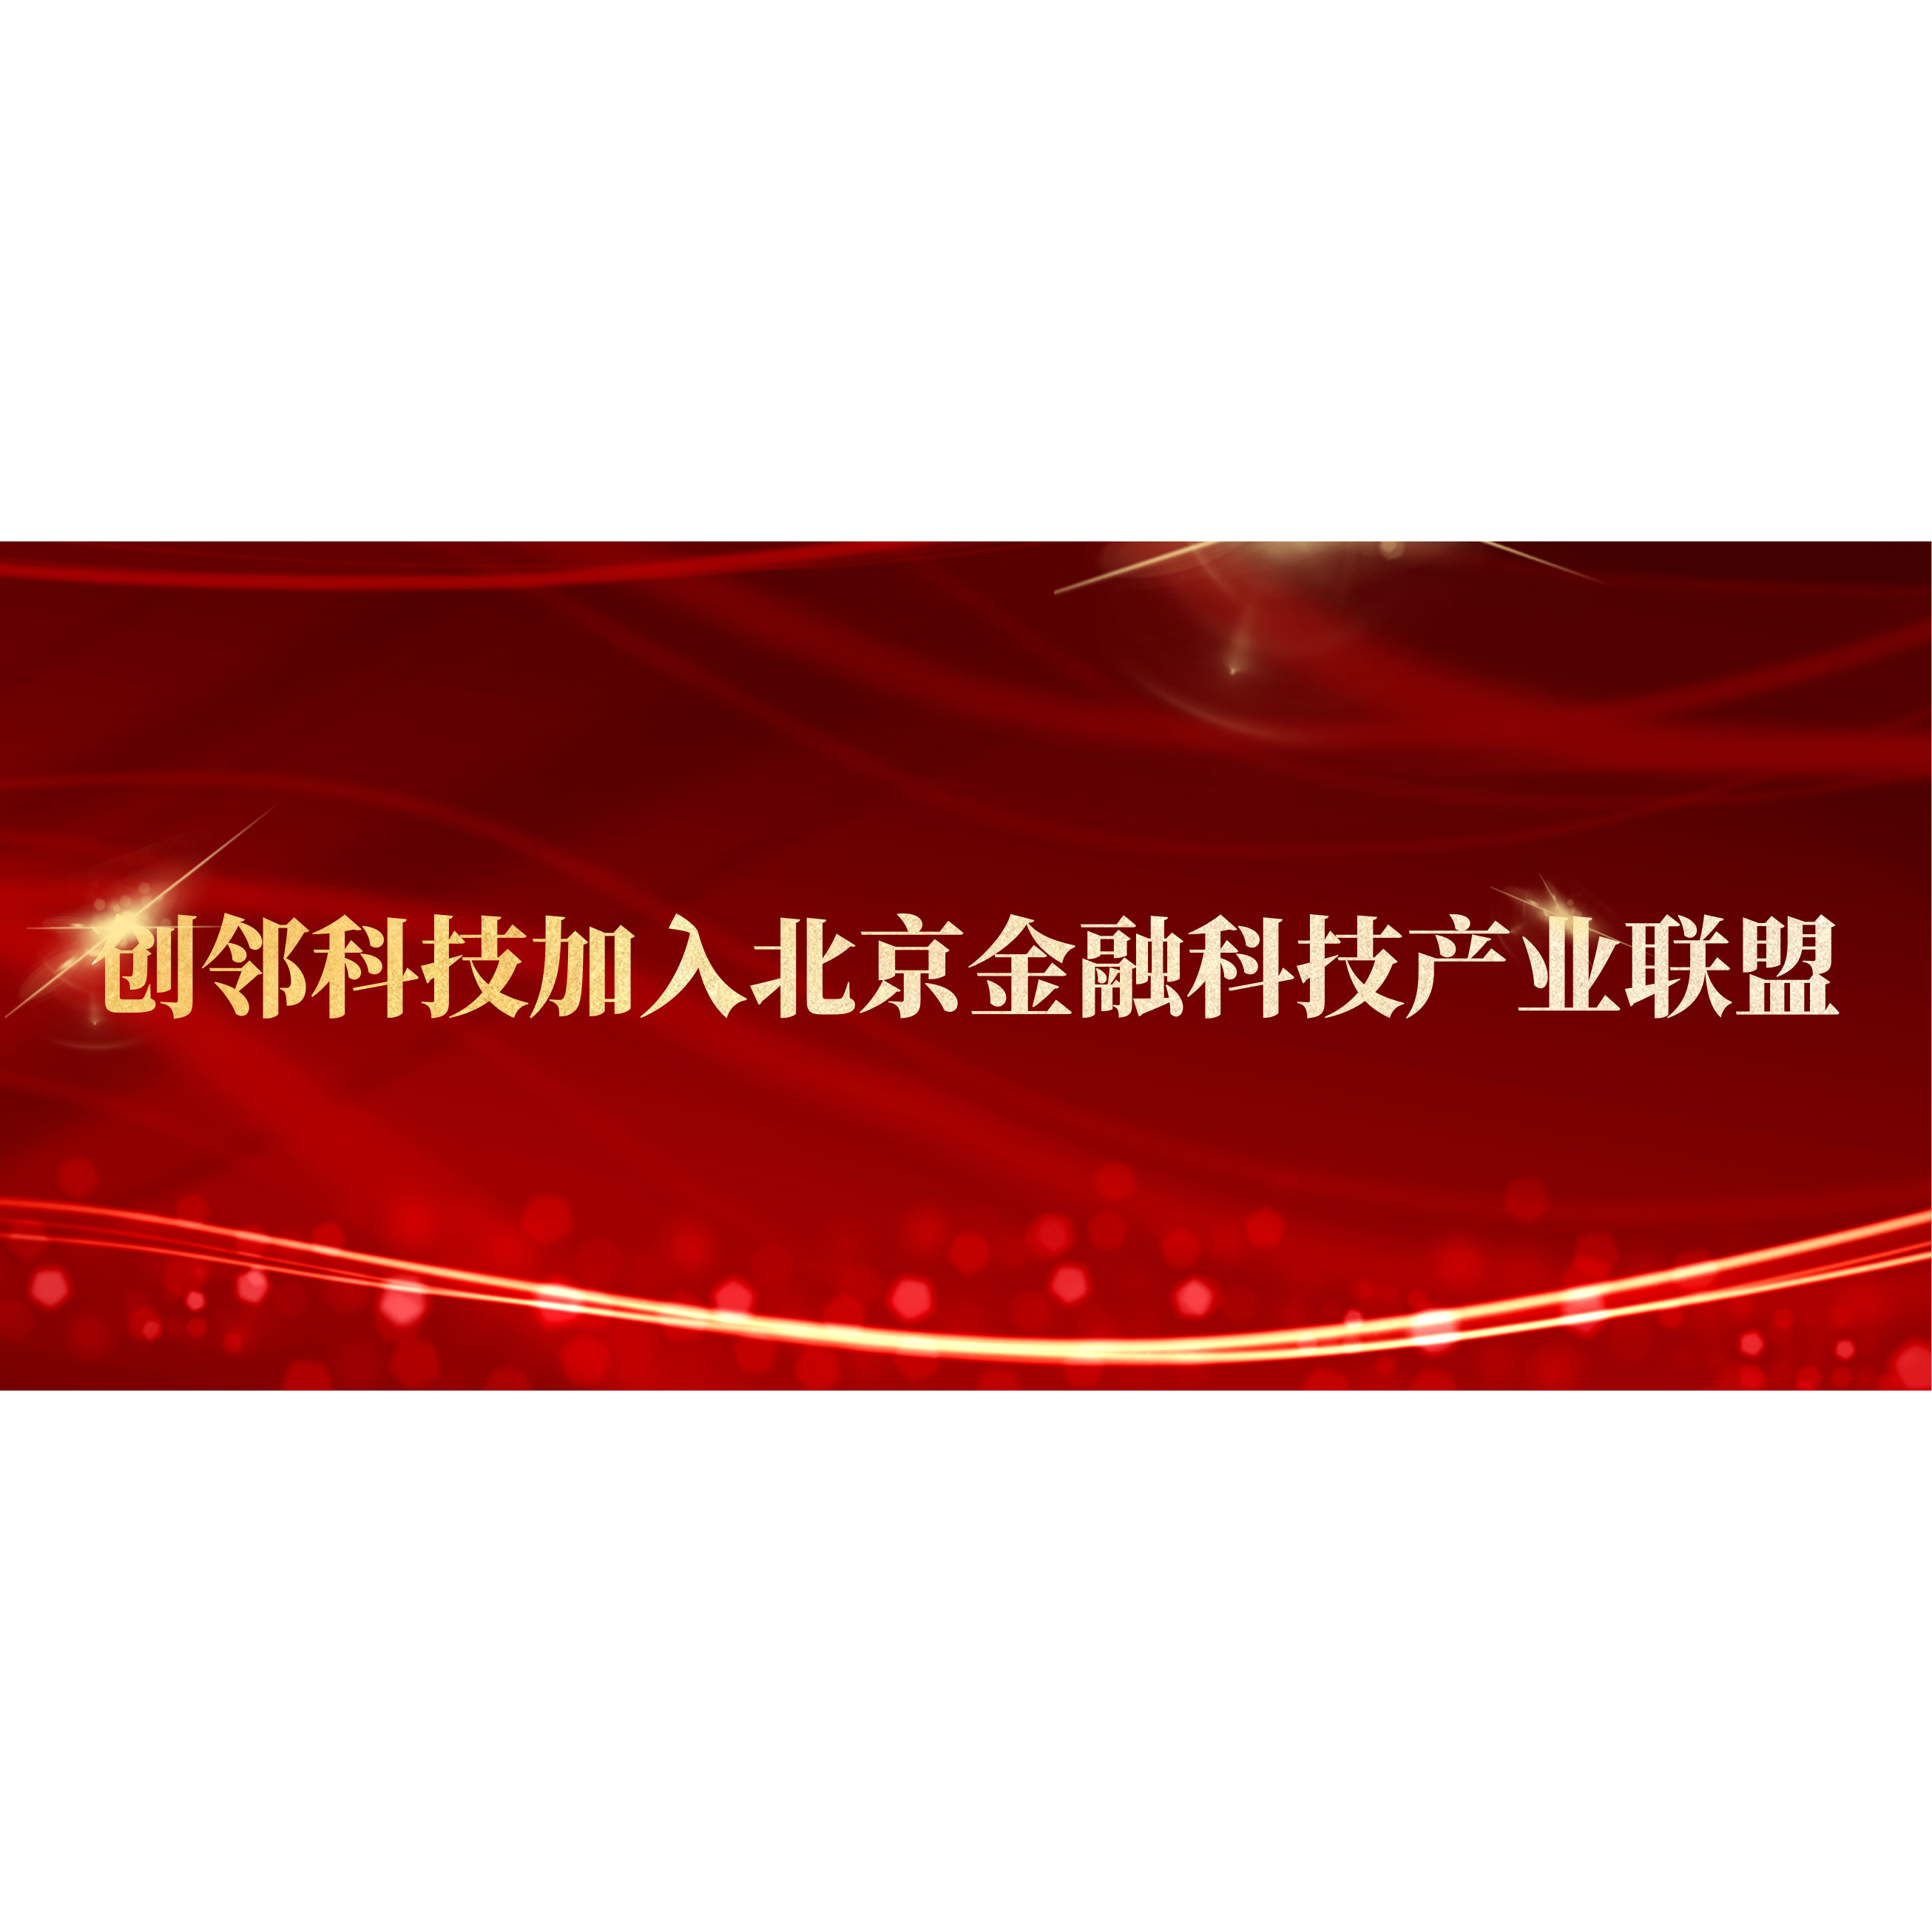 创邻科技加入北京金融科技产业联盟